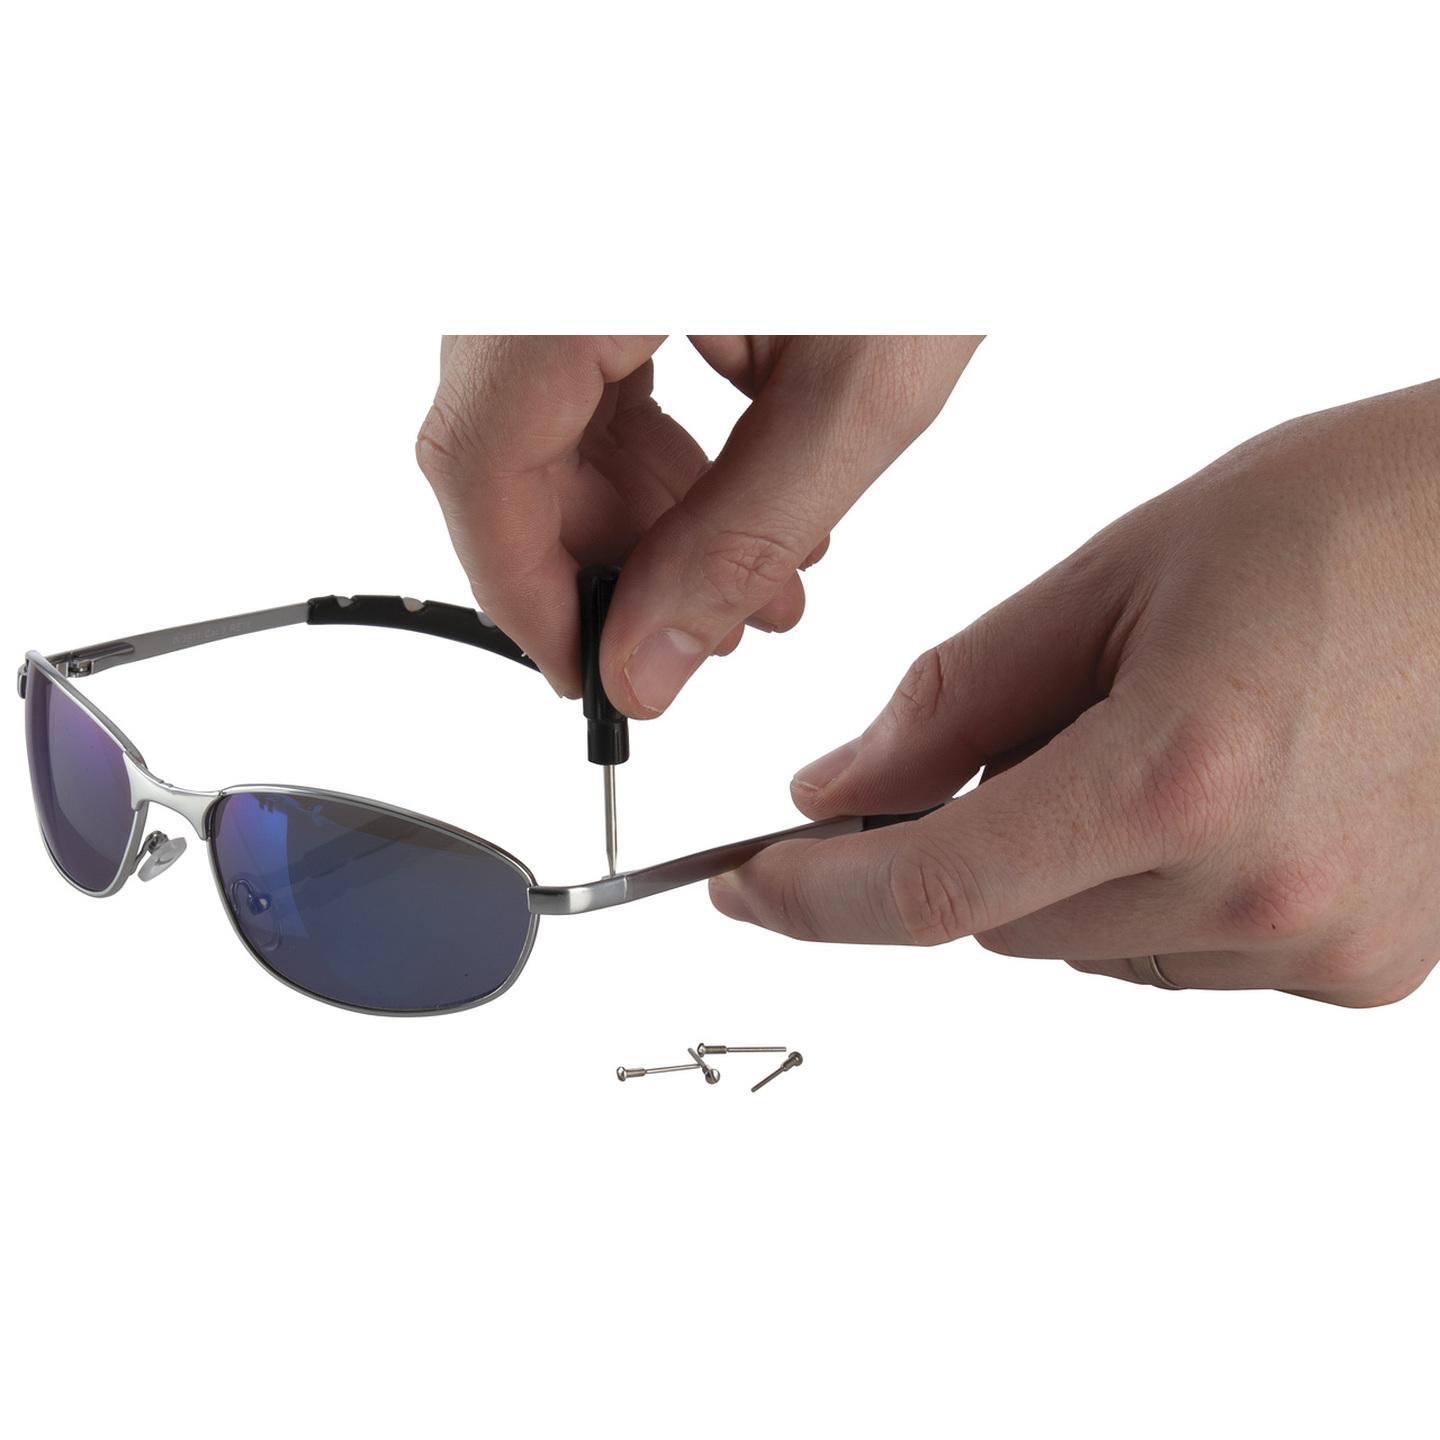 Eyeglass Repair Tool Kit